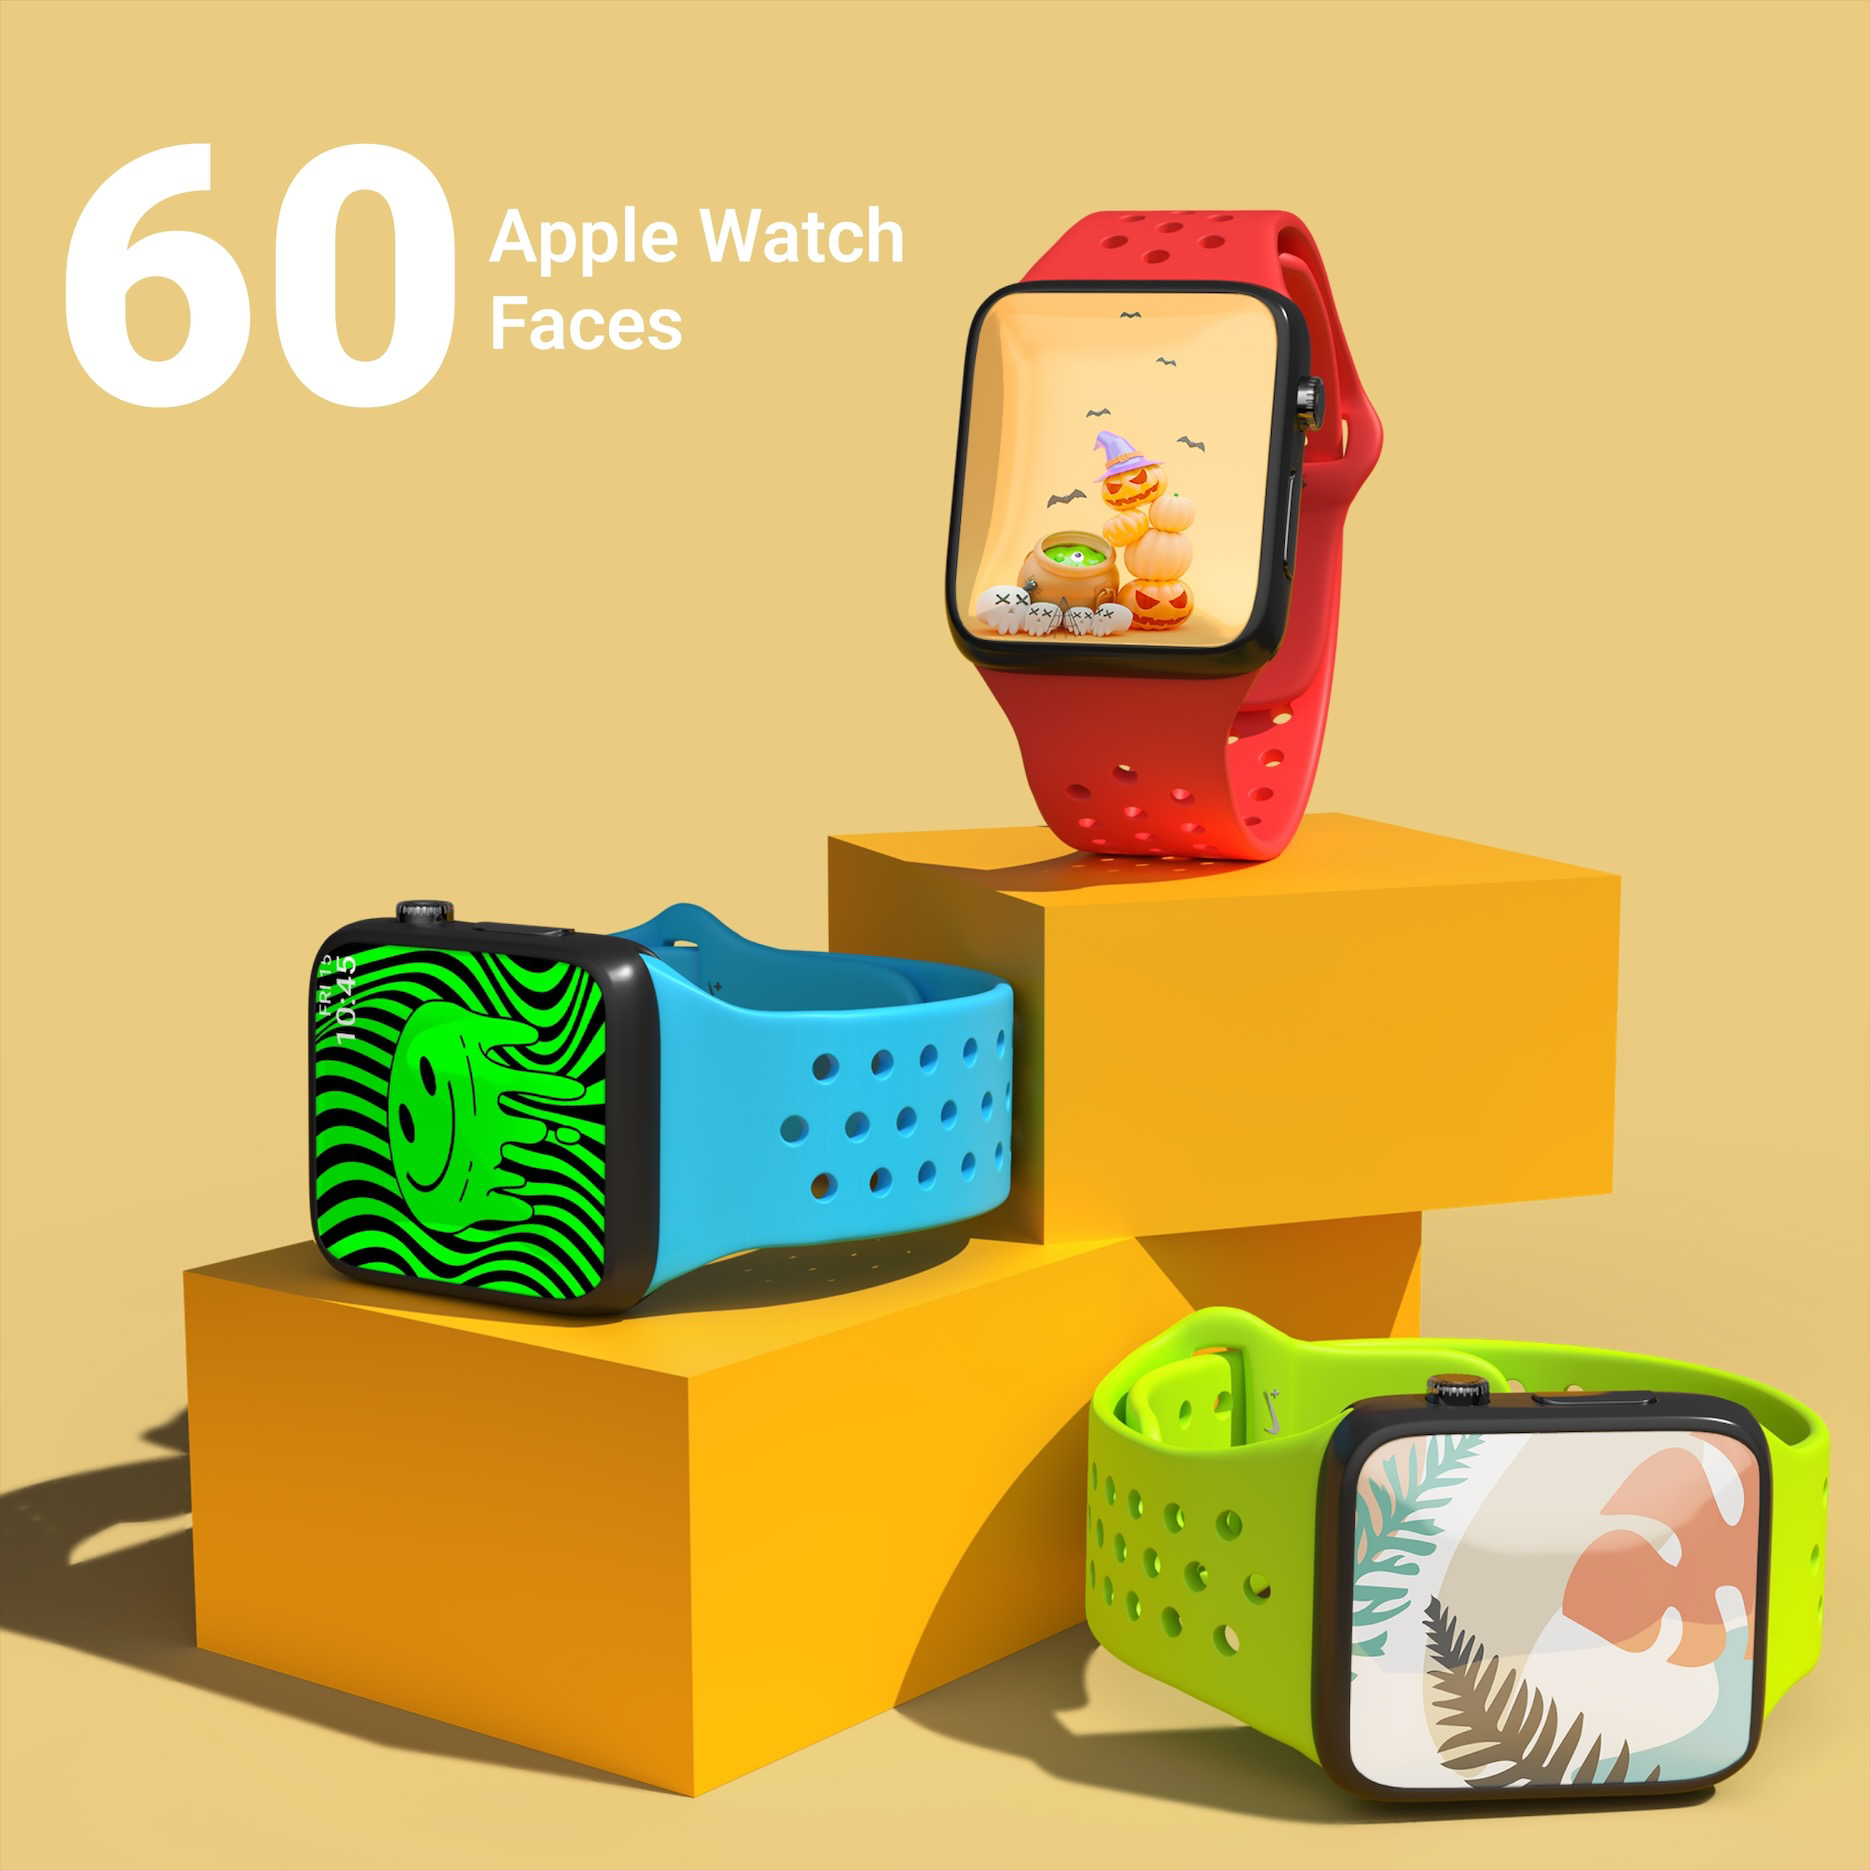 60 Apple Watch Faces Bundle cover image.